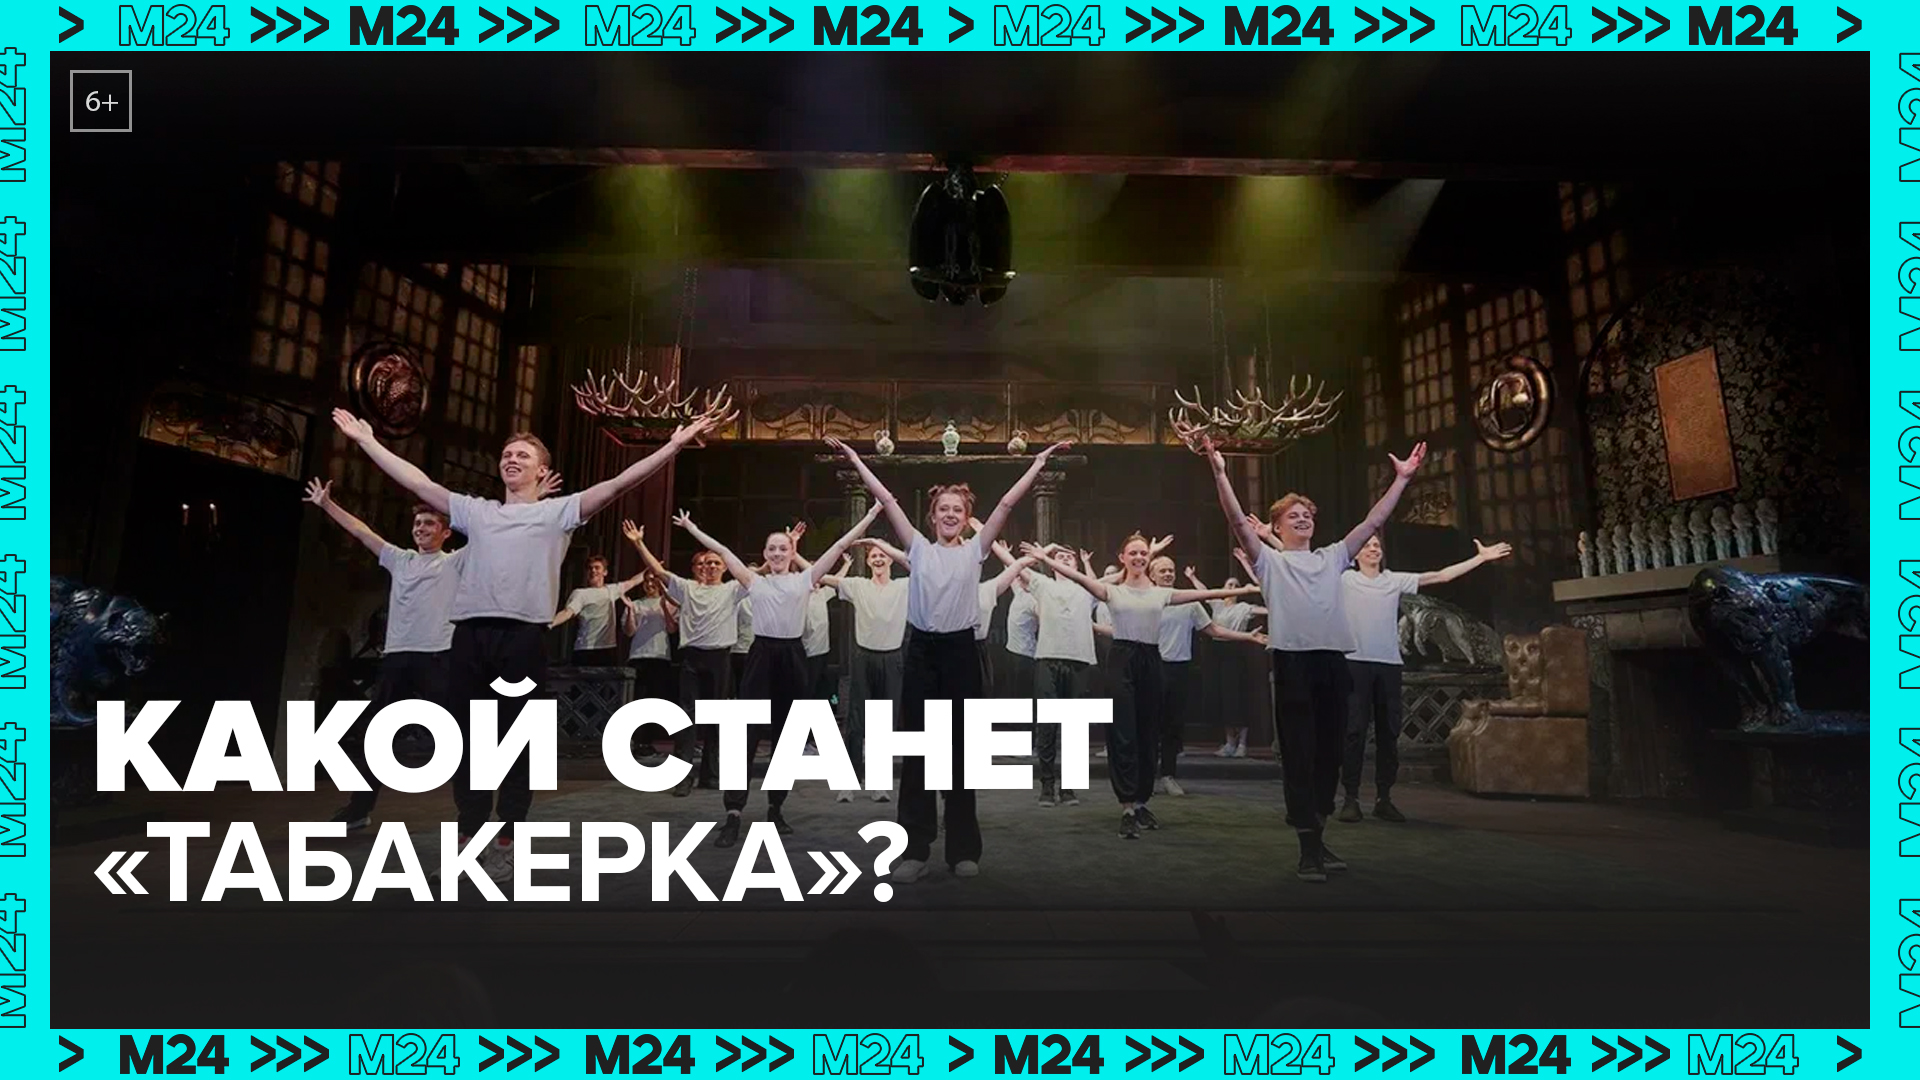 Что нового появится в Театре Олега Табакова после реконструкции? — Москва 24